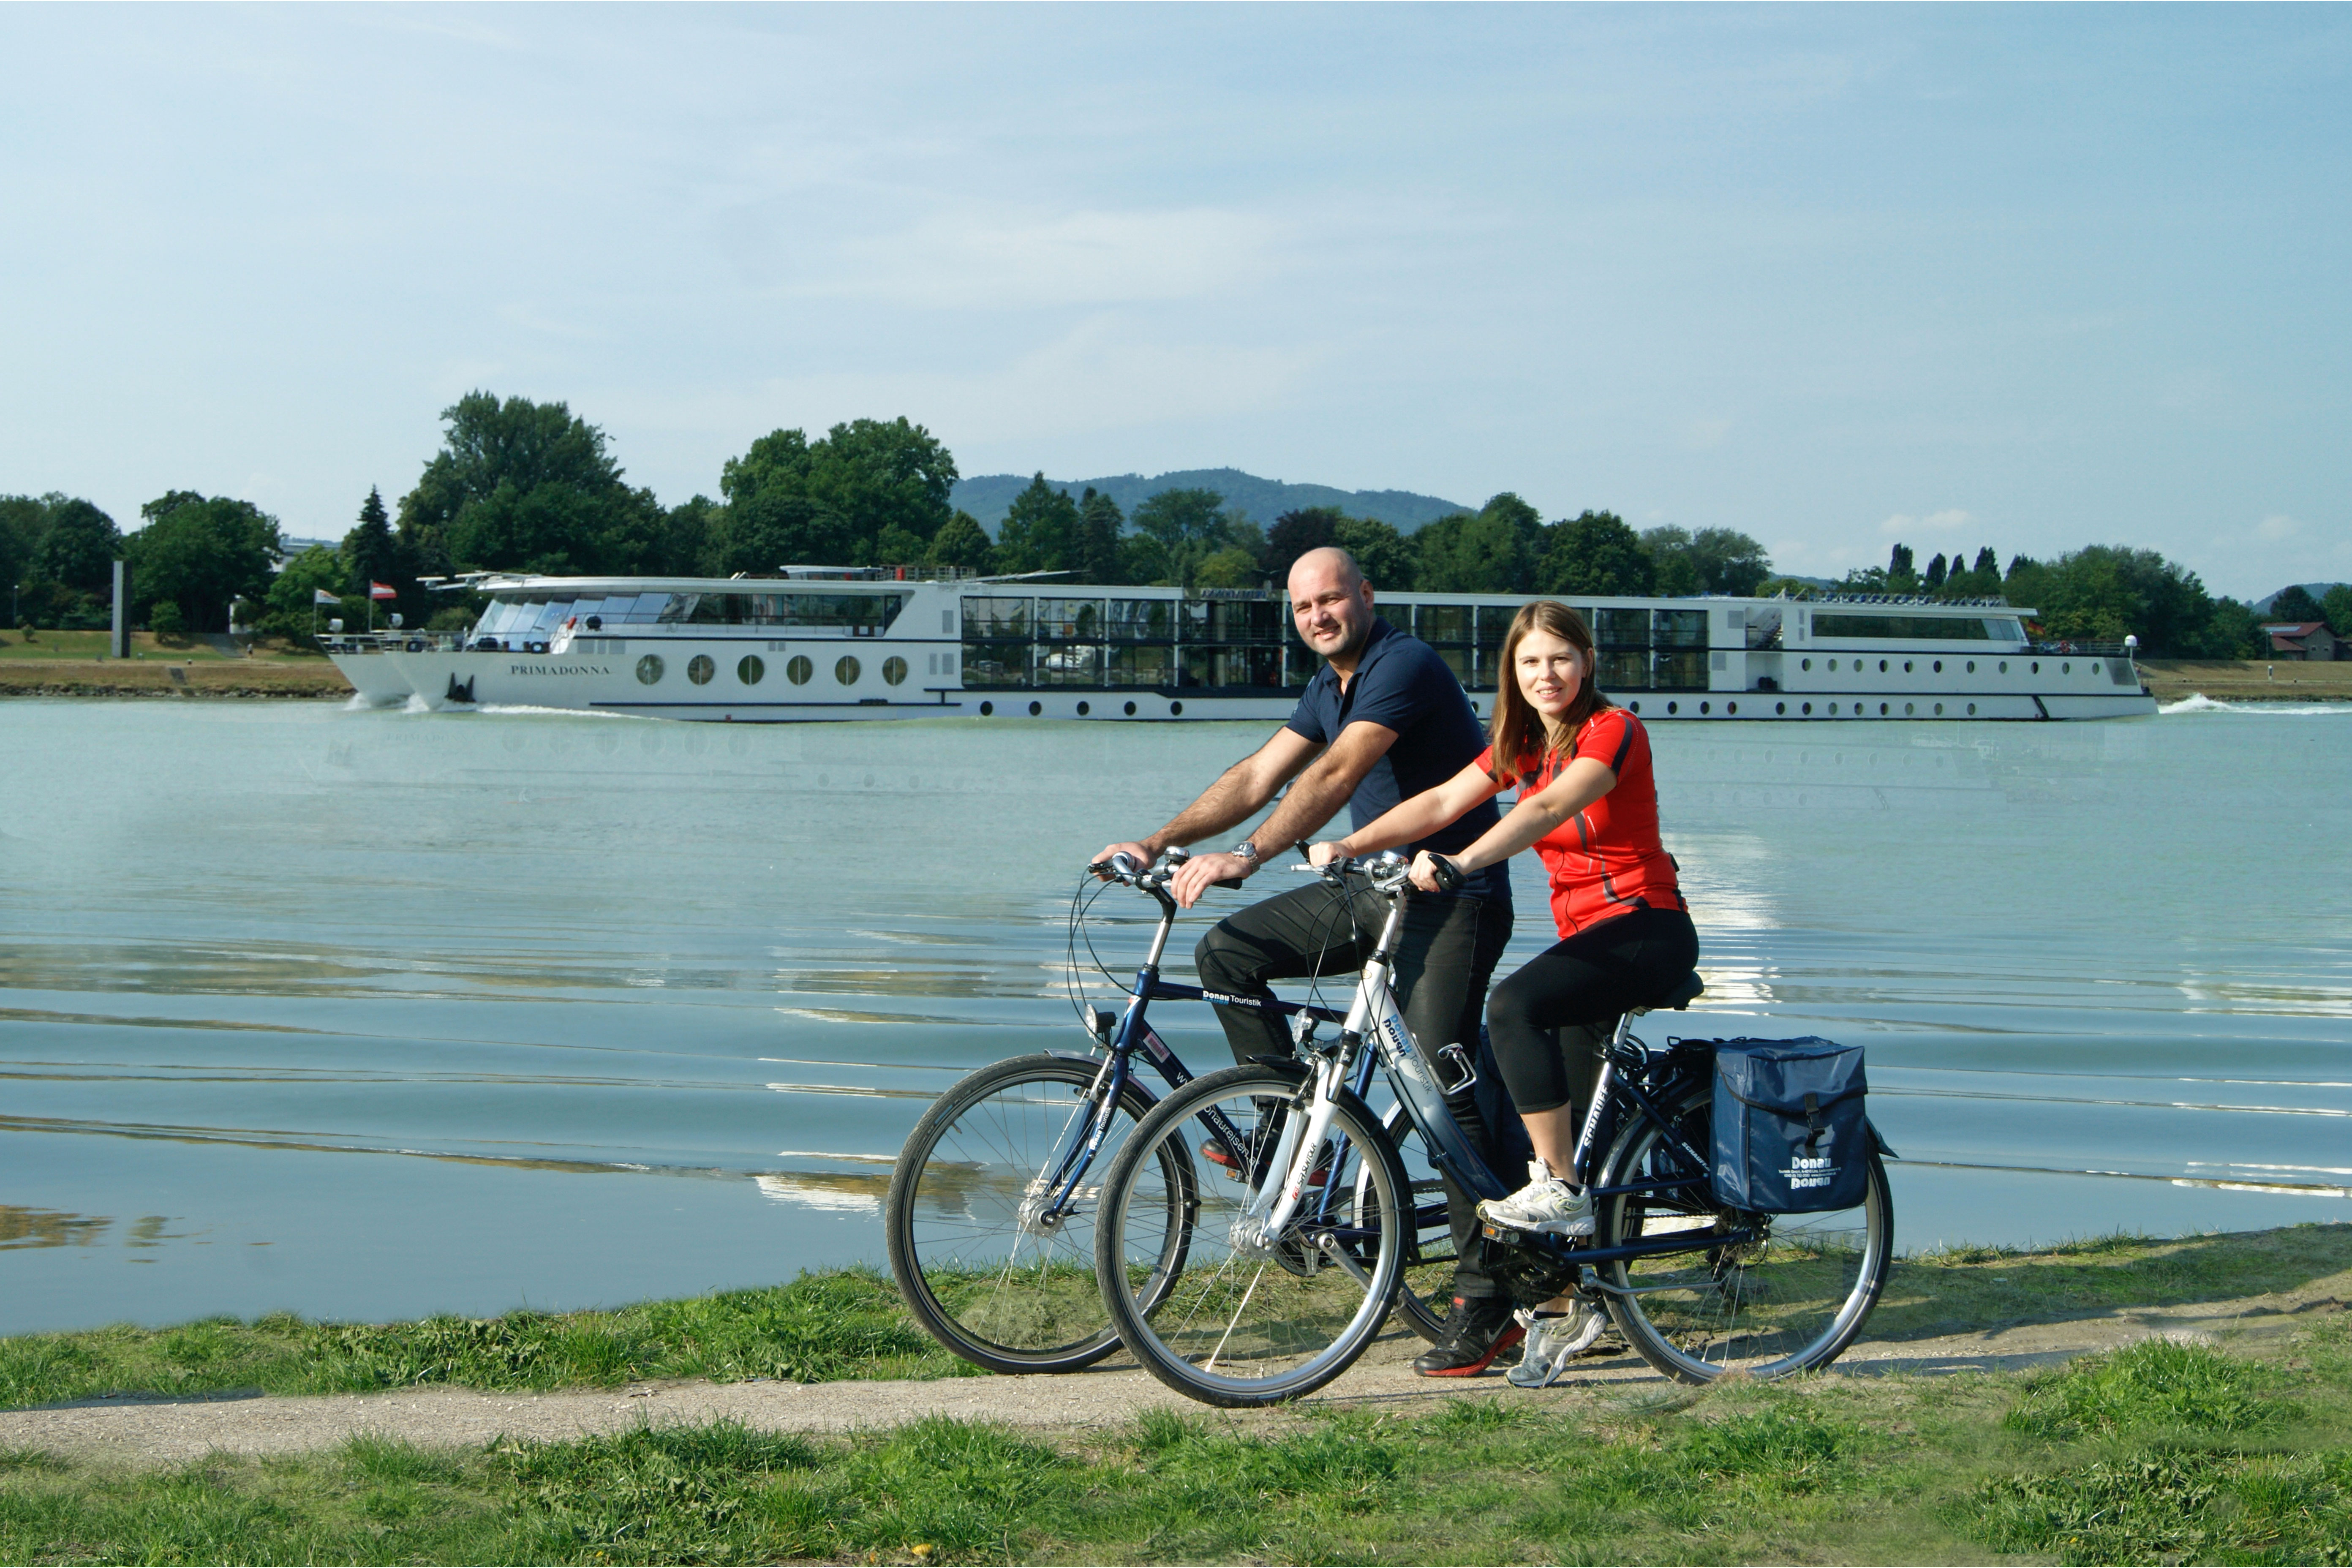 Gutschein für eine Donaukreuzfahrt für 2 Personen